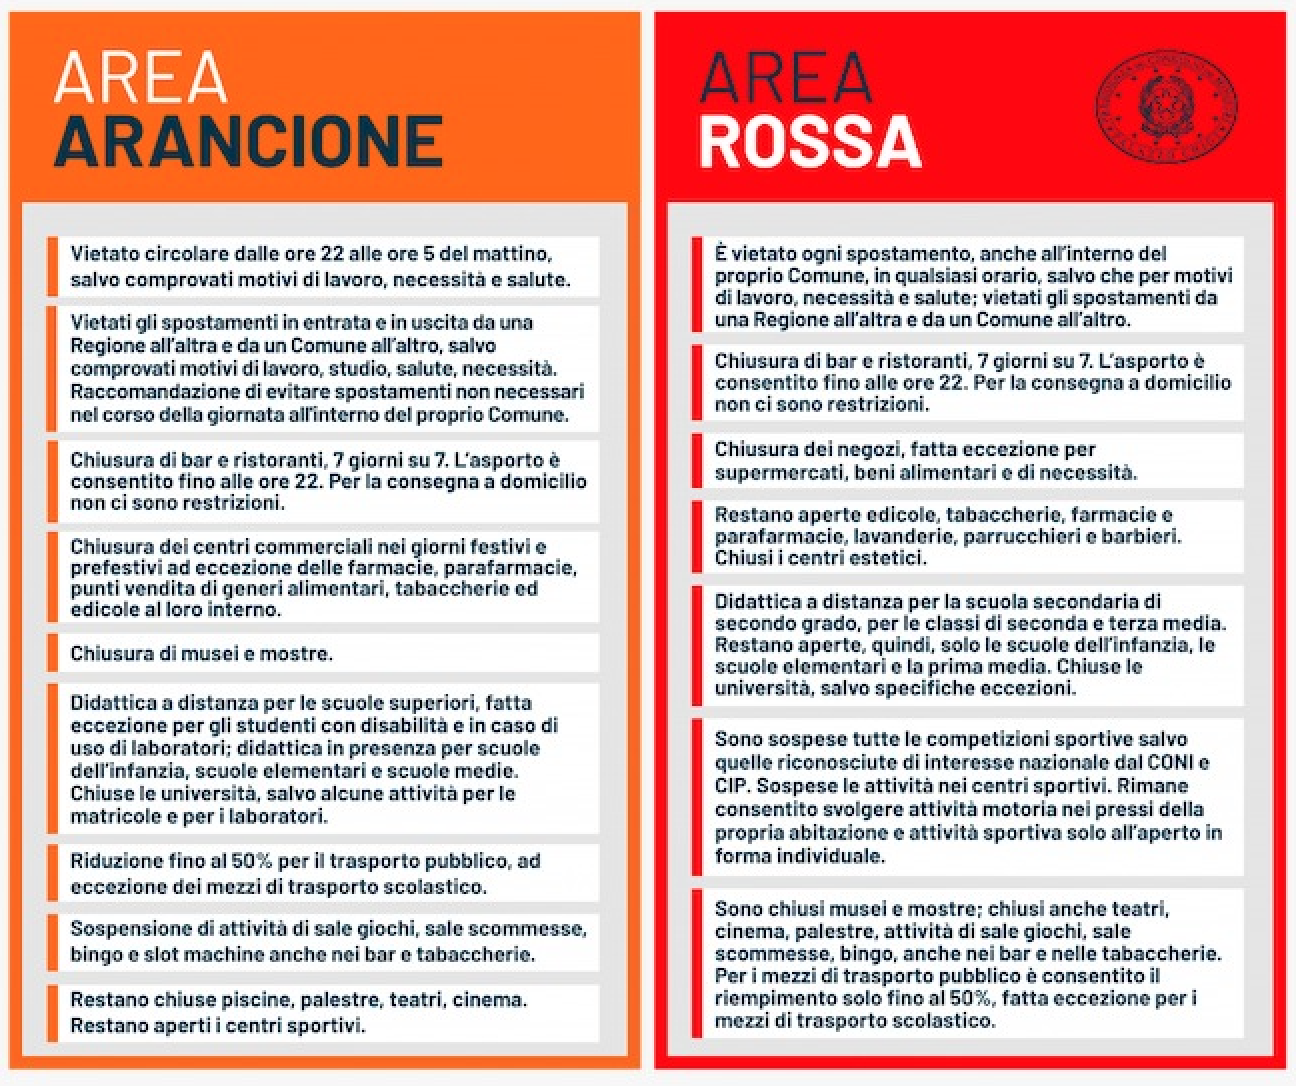 Disposizioni per area rossa sul sito del Governo confrontate con quelle per area arancione